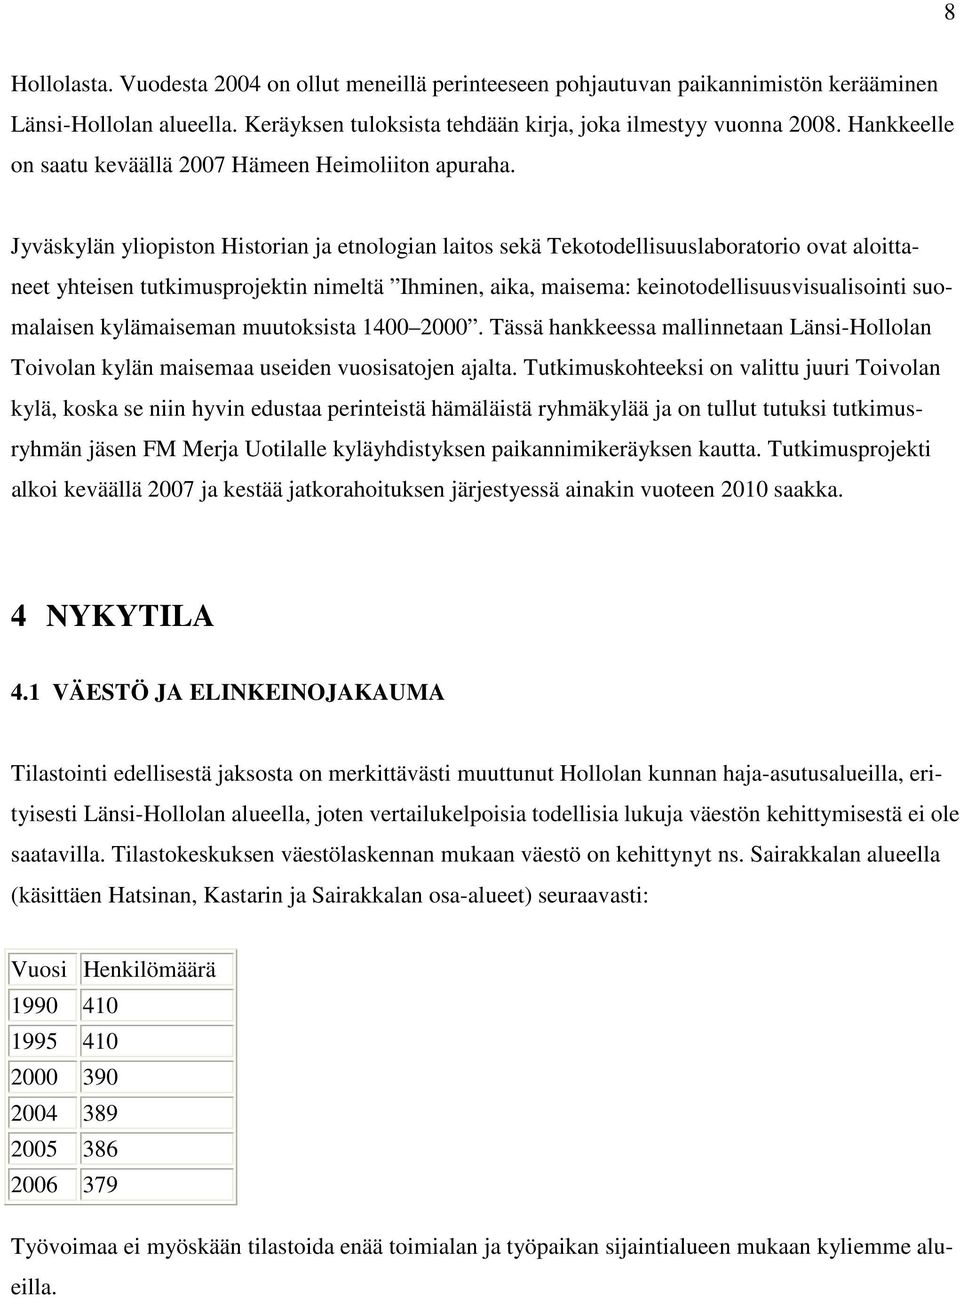 Jyväskylän yliopiston Historian ja etnologian laitos sekä Tekotodellisuuslaboratorio ovat aloittaneet yhteisen tutkimusprojektin nimeltä Ihminen, aika, maisema: keinotodellisuusvisualisointi